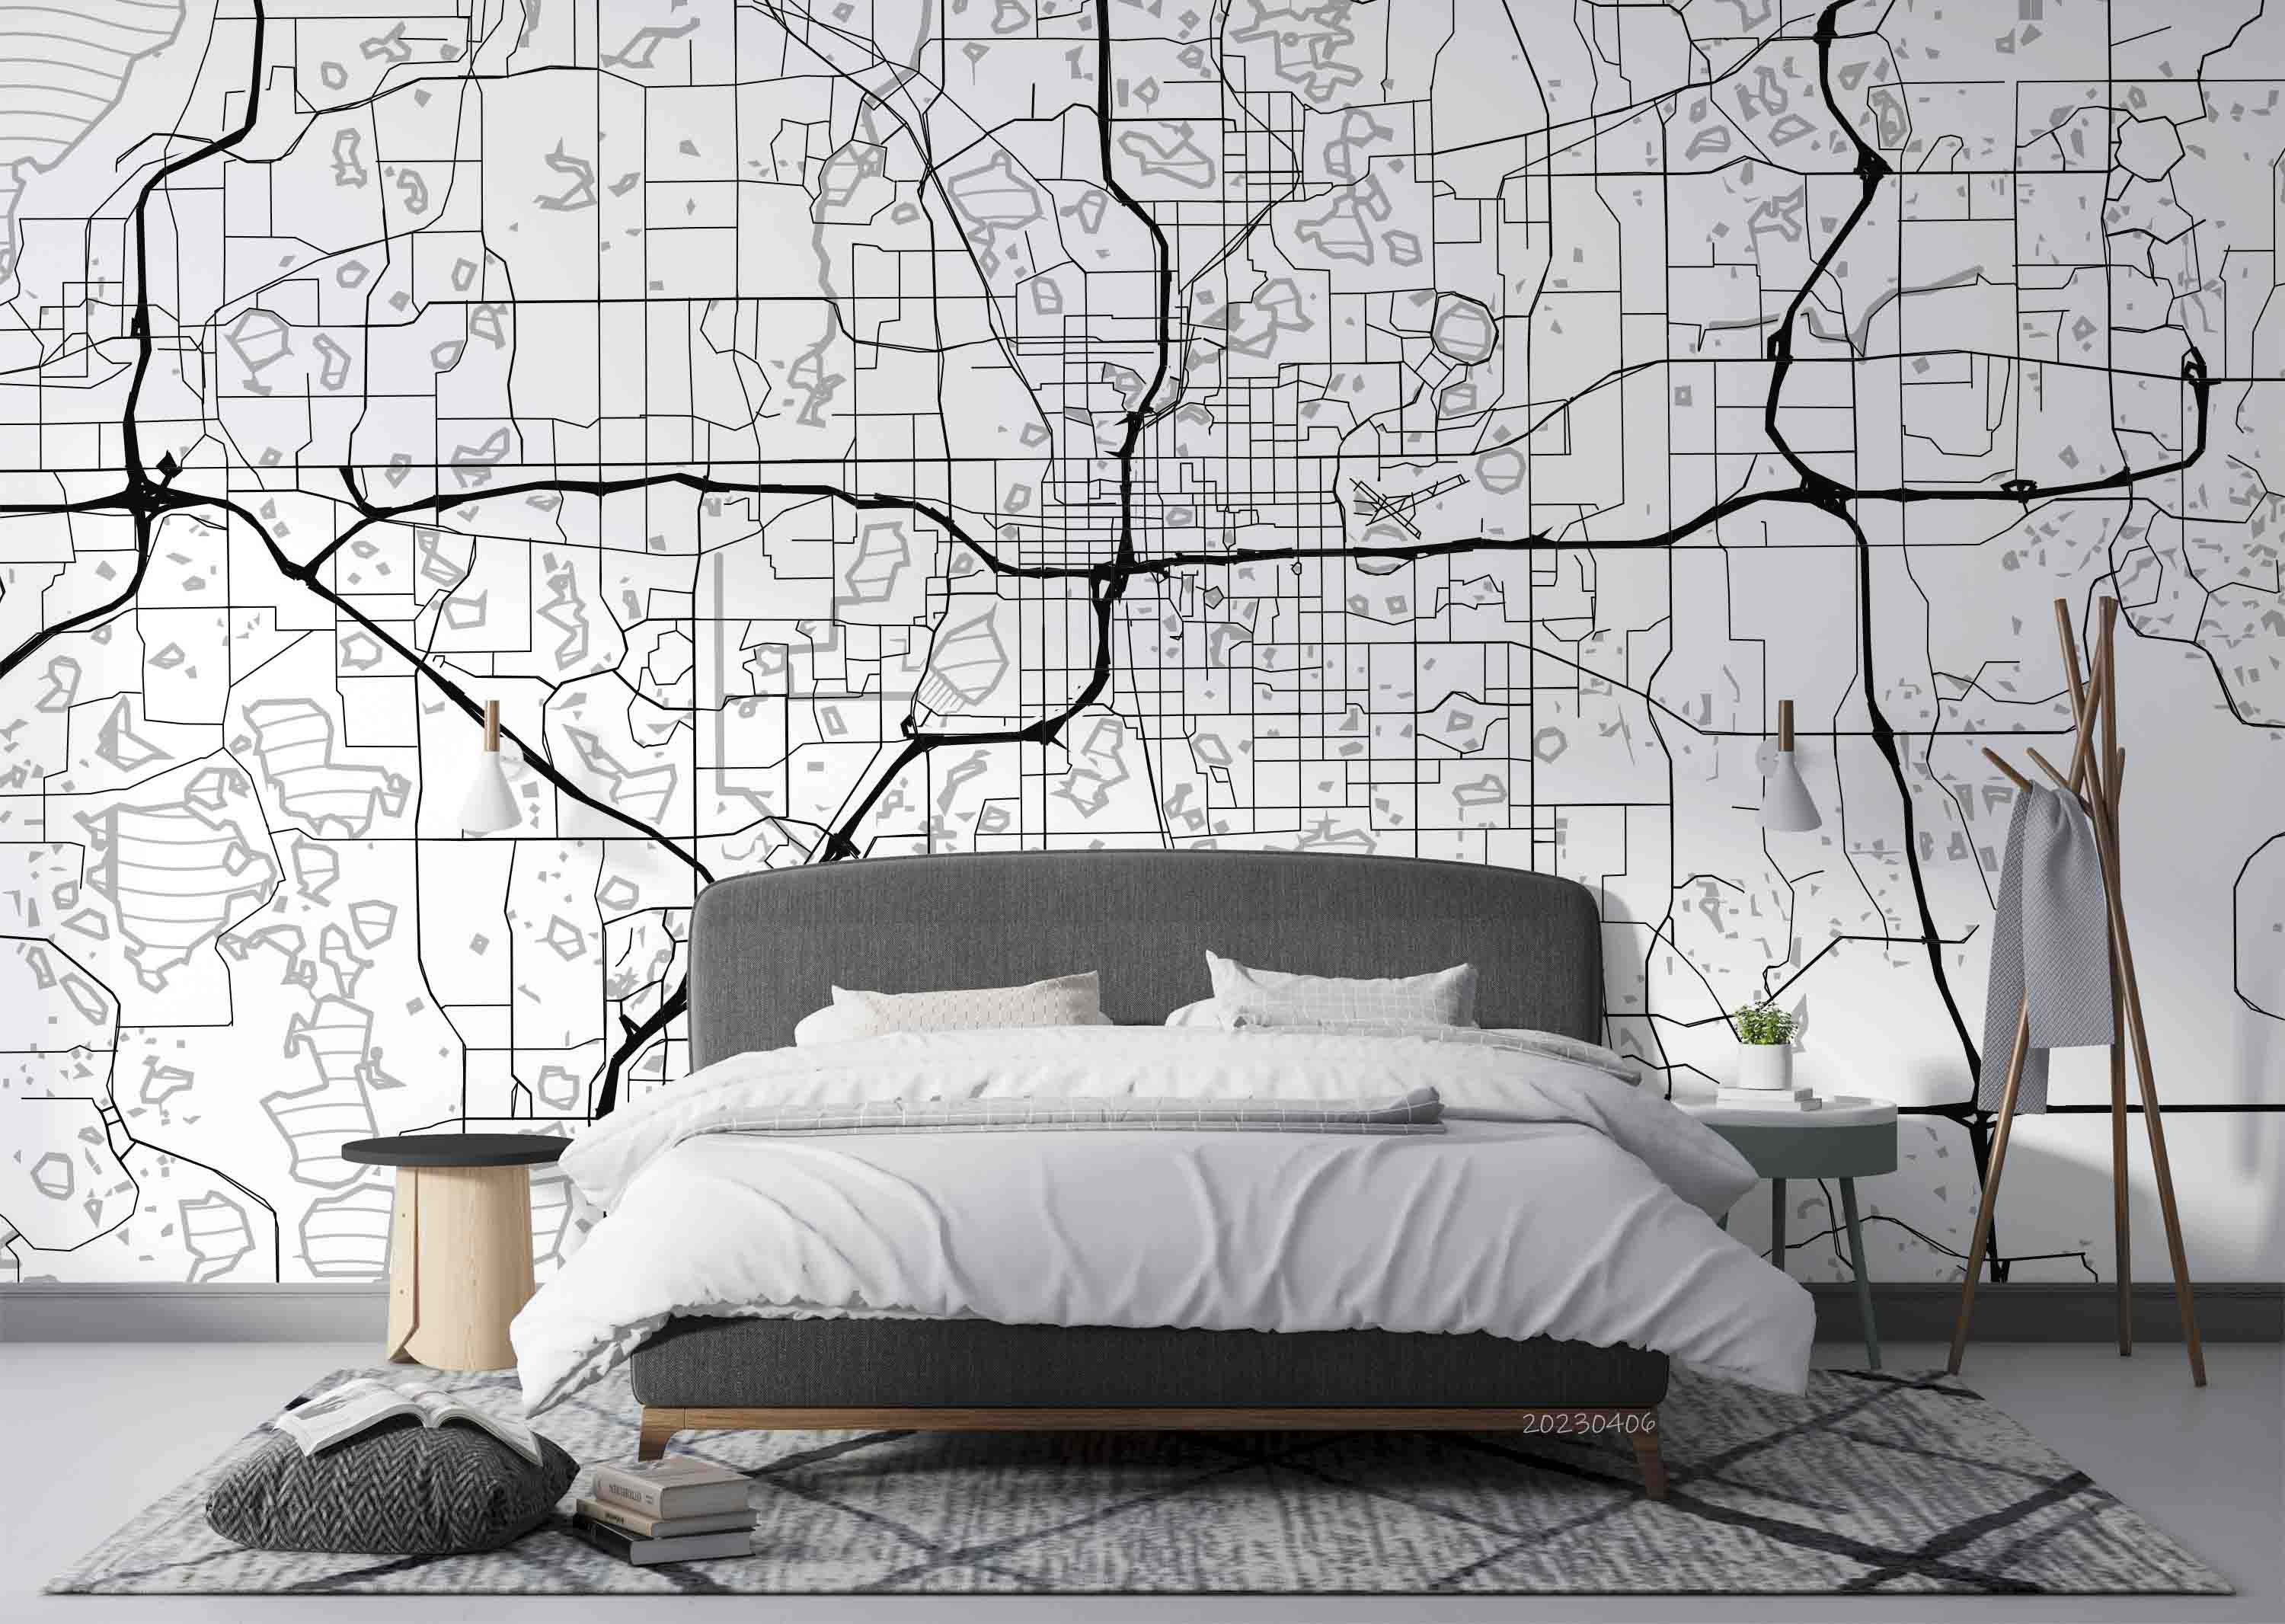 3D Area Map Land Water Roads USA Orlando Wall Mural Wallpaper GD 5634- Jess Art Decoration